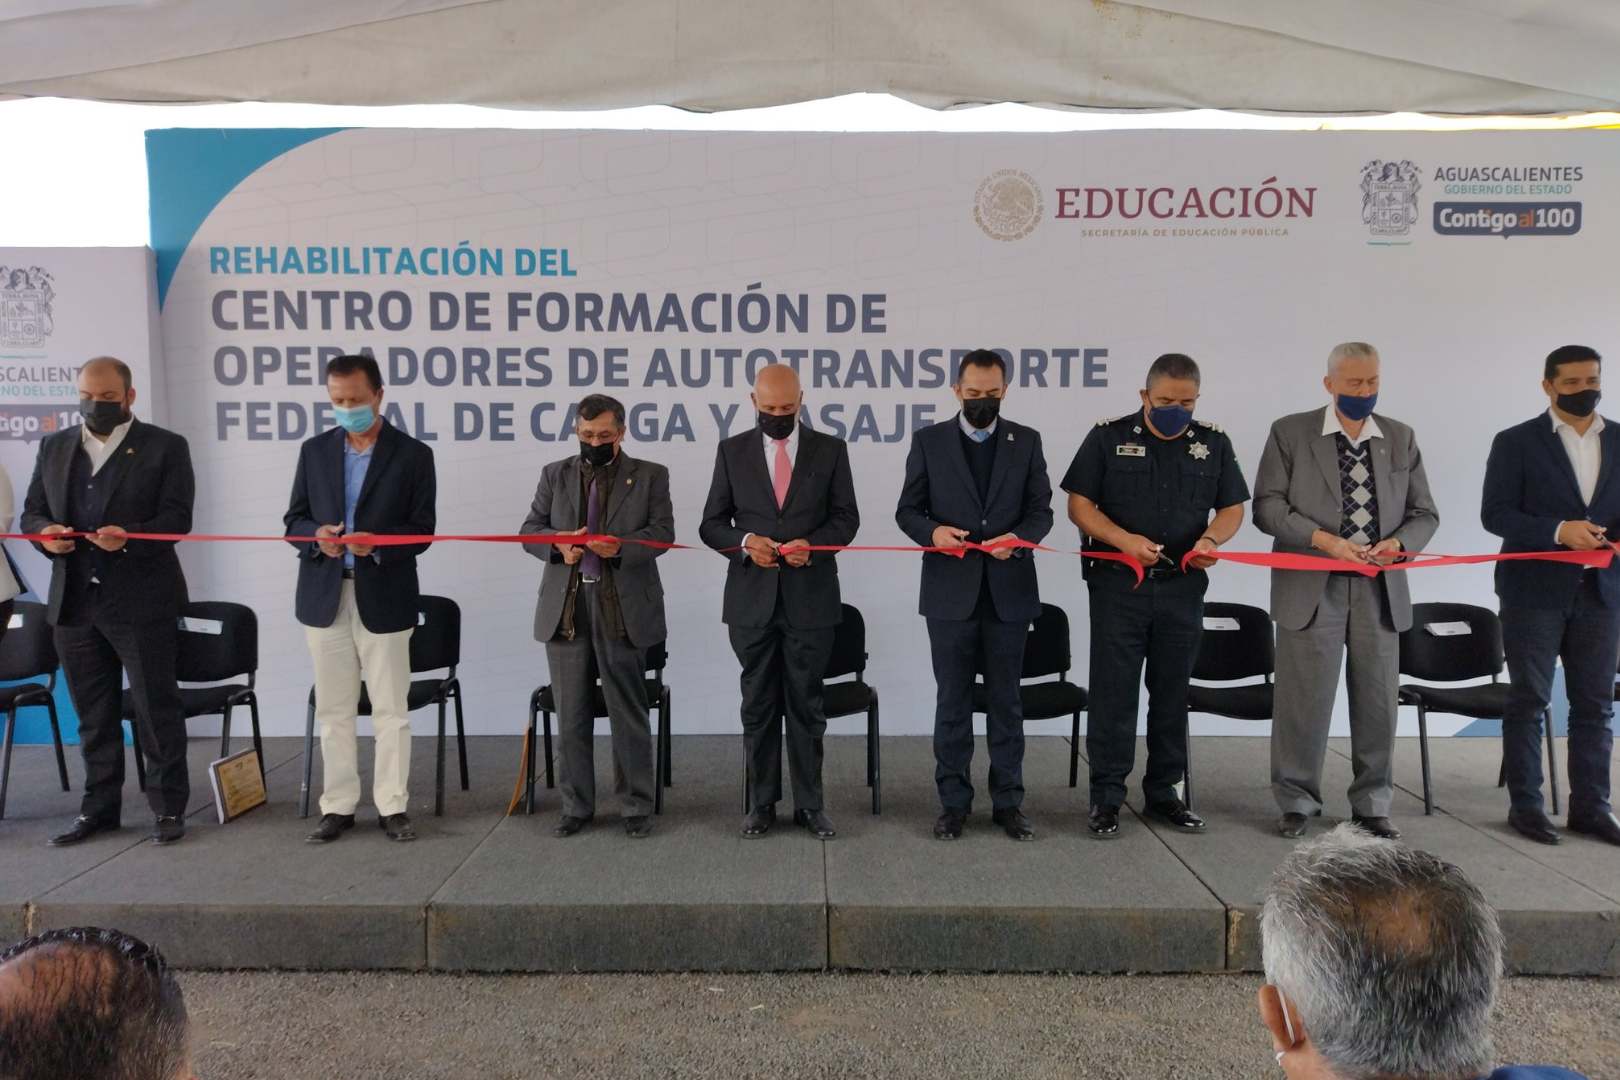 Canacar Reinauguran Centro de Formación de Operadores en Aguascalientes